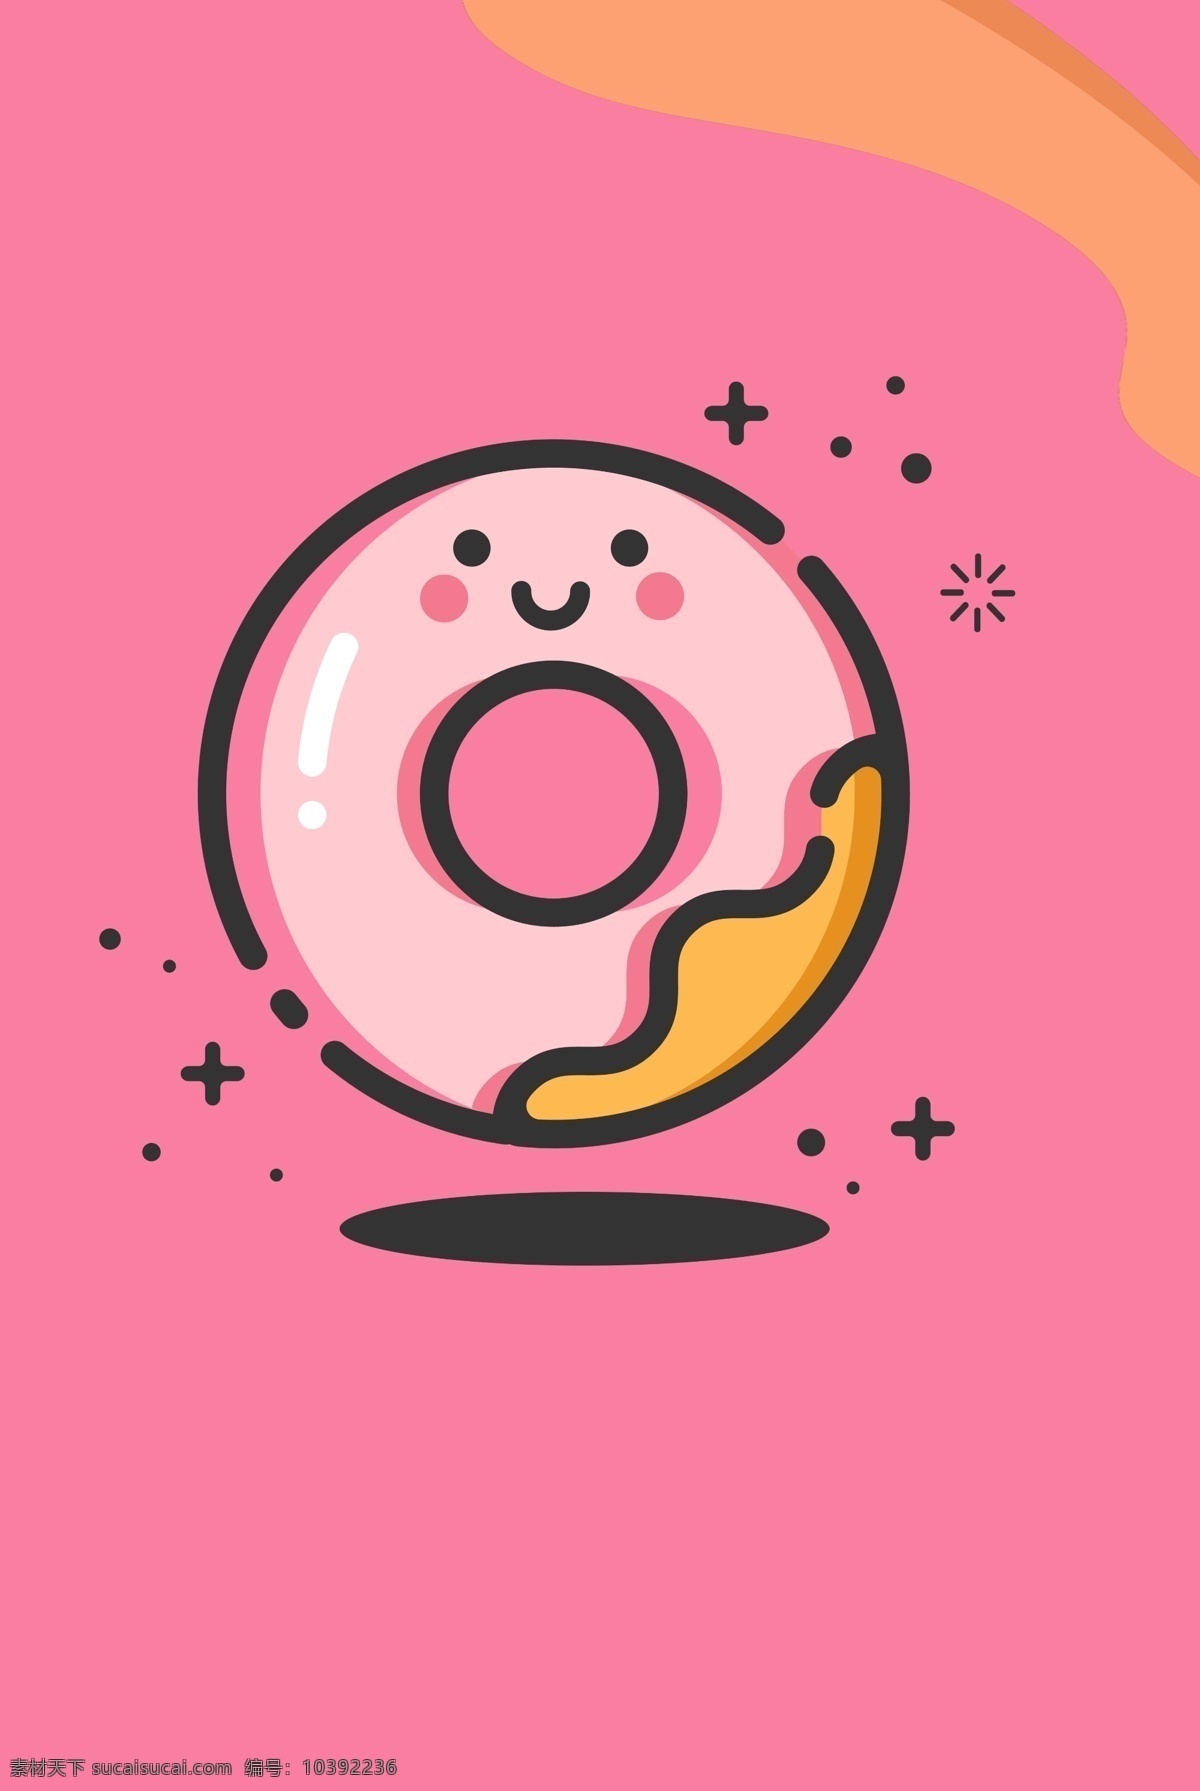 mbe 卡通 矢量图 创意 概念 矢量 小清新 图标 扁平 插画 简约 手绘 粉色 甜美 甜甜圈